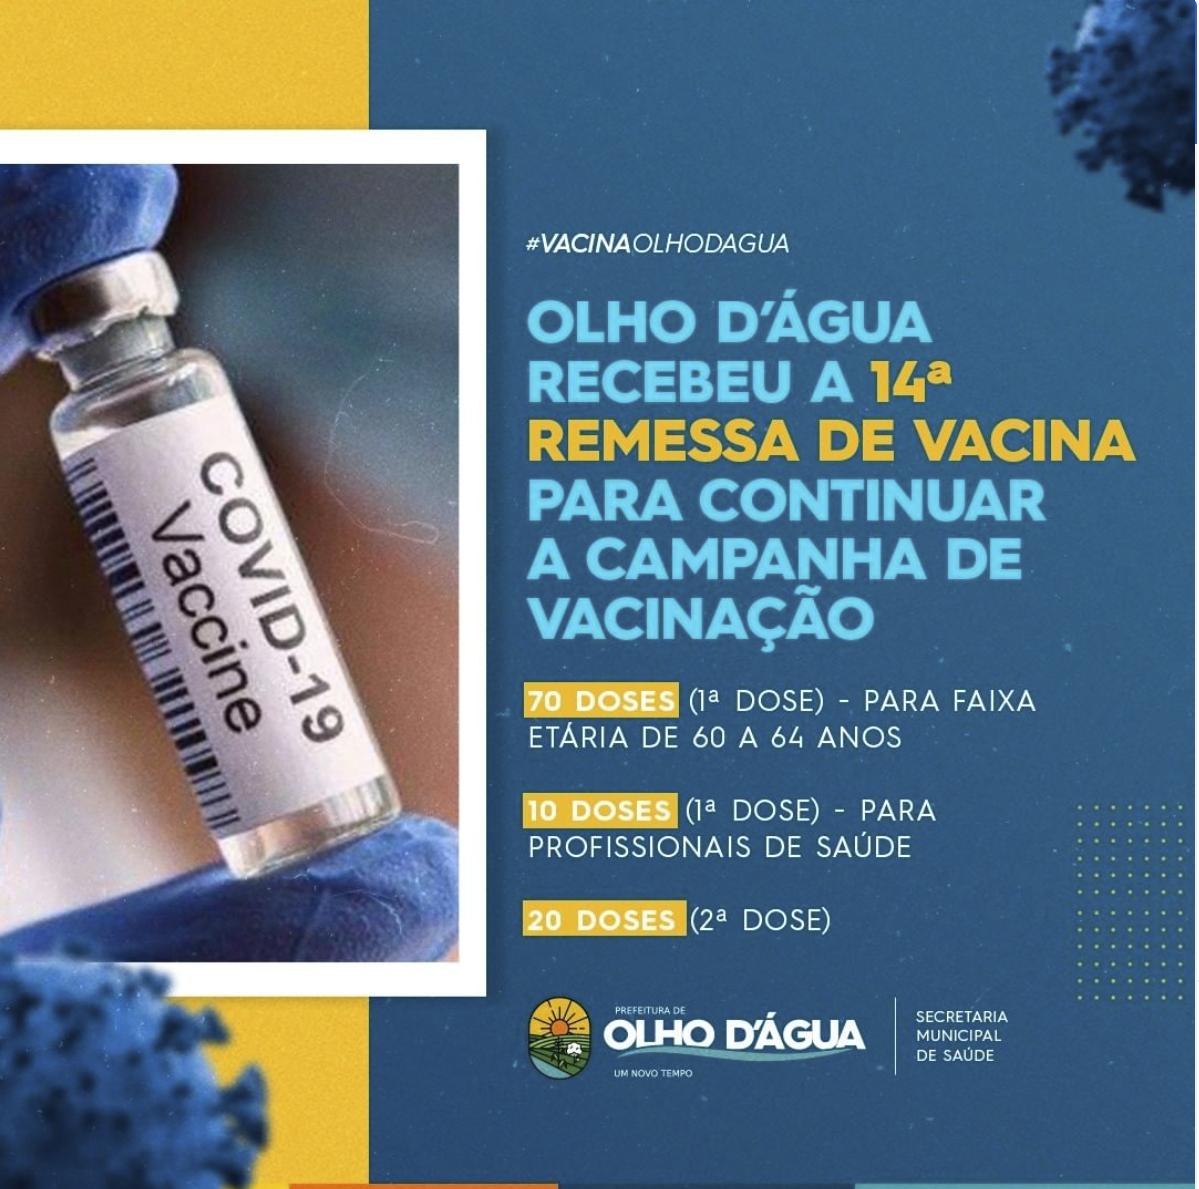 Imagem da notícia 73 - Olho D'Água recebeu a 14ª remessa de vacina para continuar a campanha de vacinação